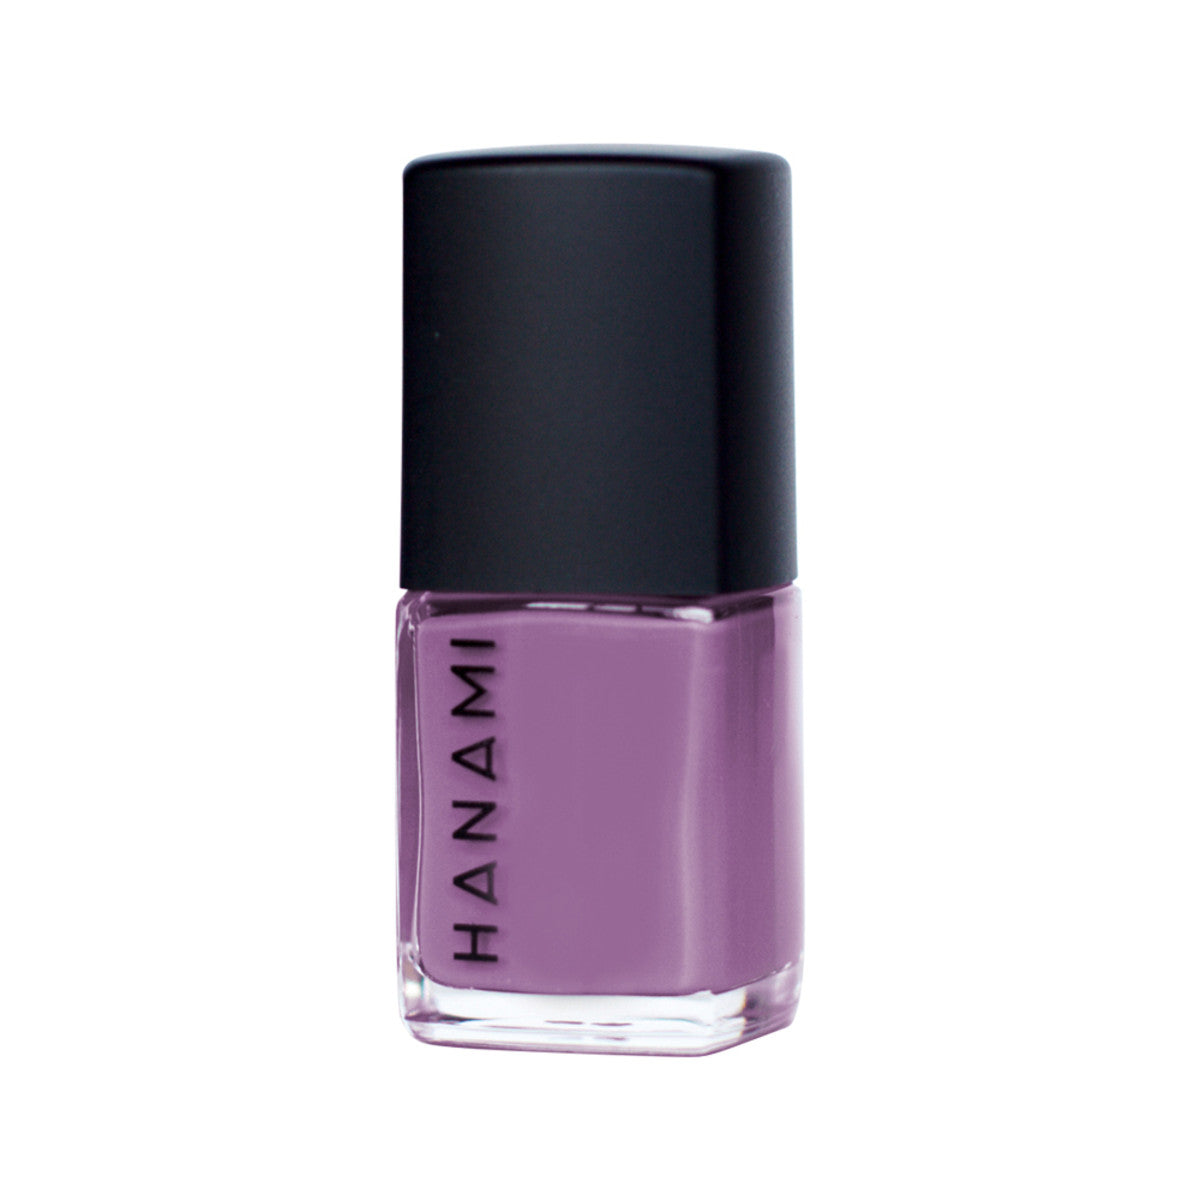 Hanami - Nail Polish Purple Rain 15ml